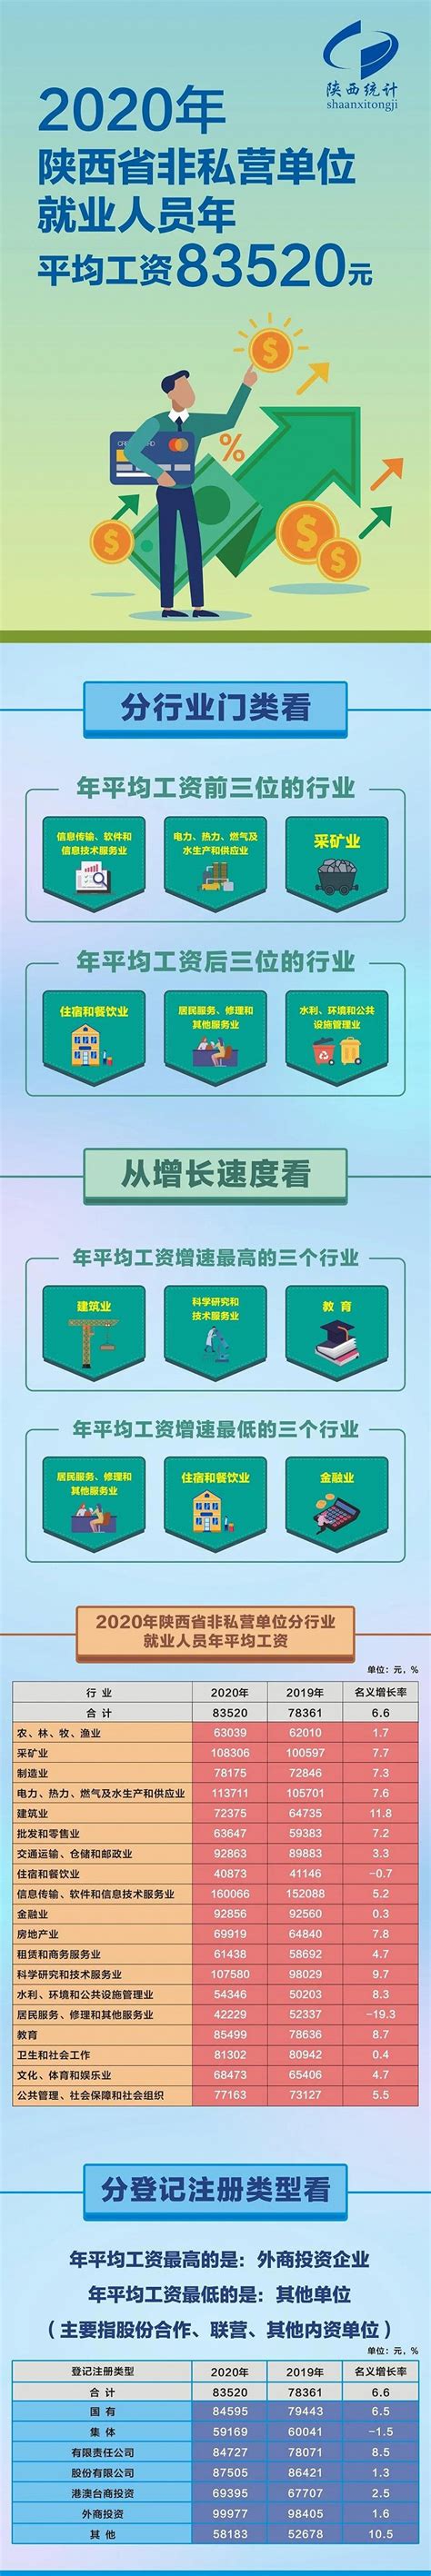 千阳县人民政府 批准和实施信息 陕西省企业投资项目备案确认书